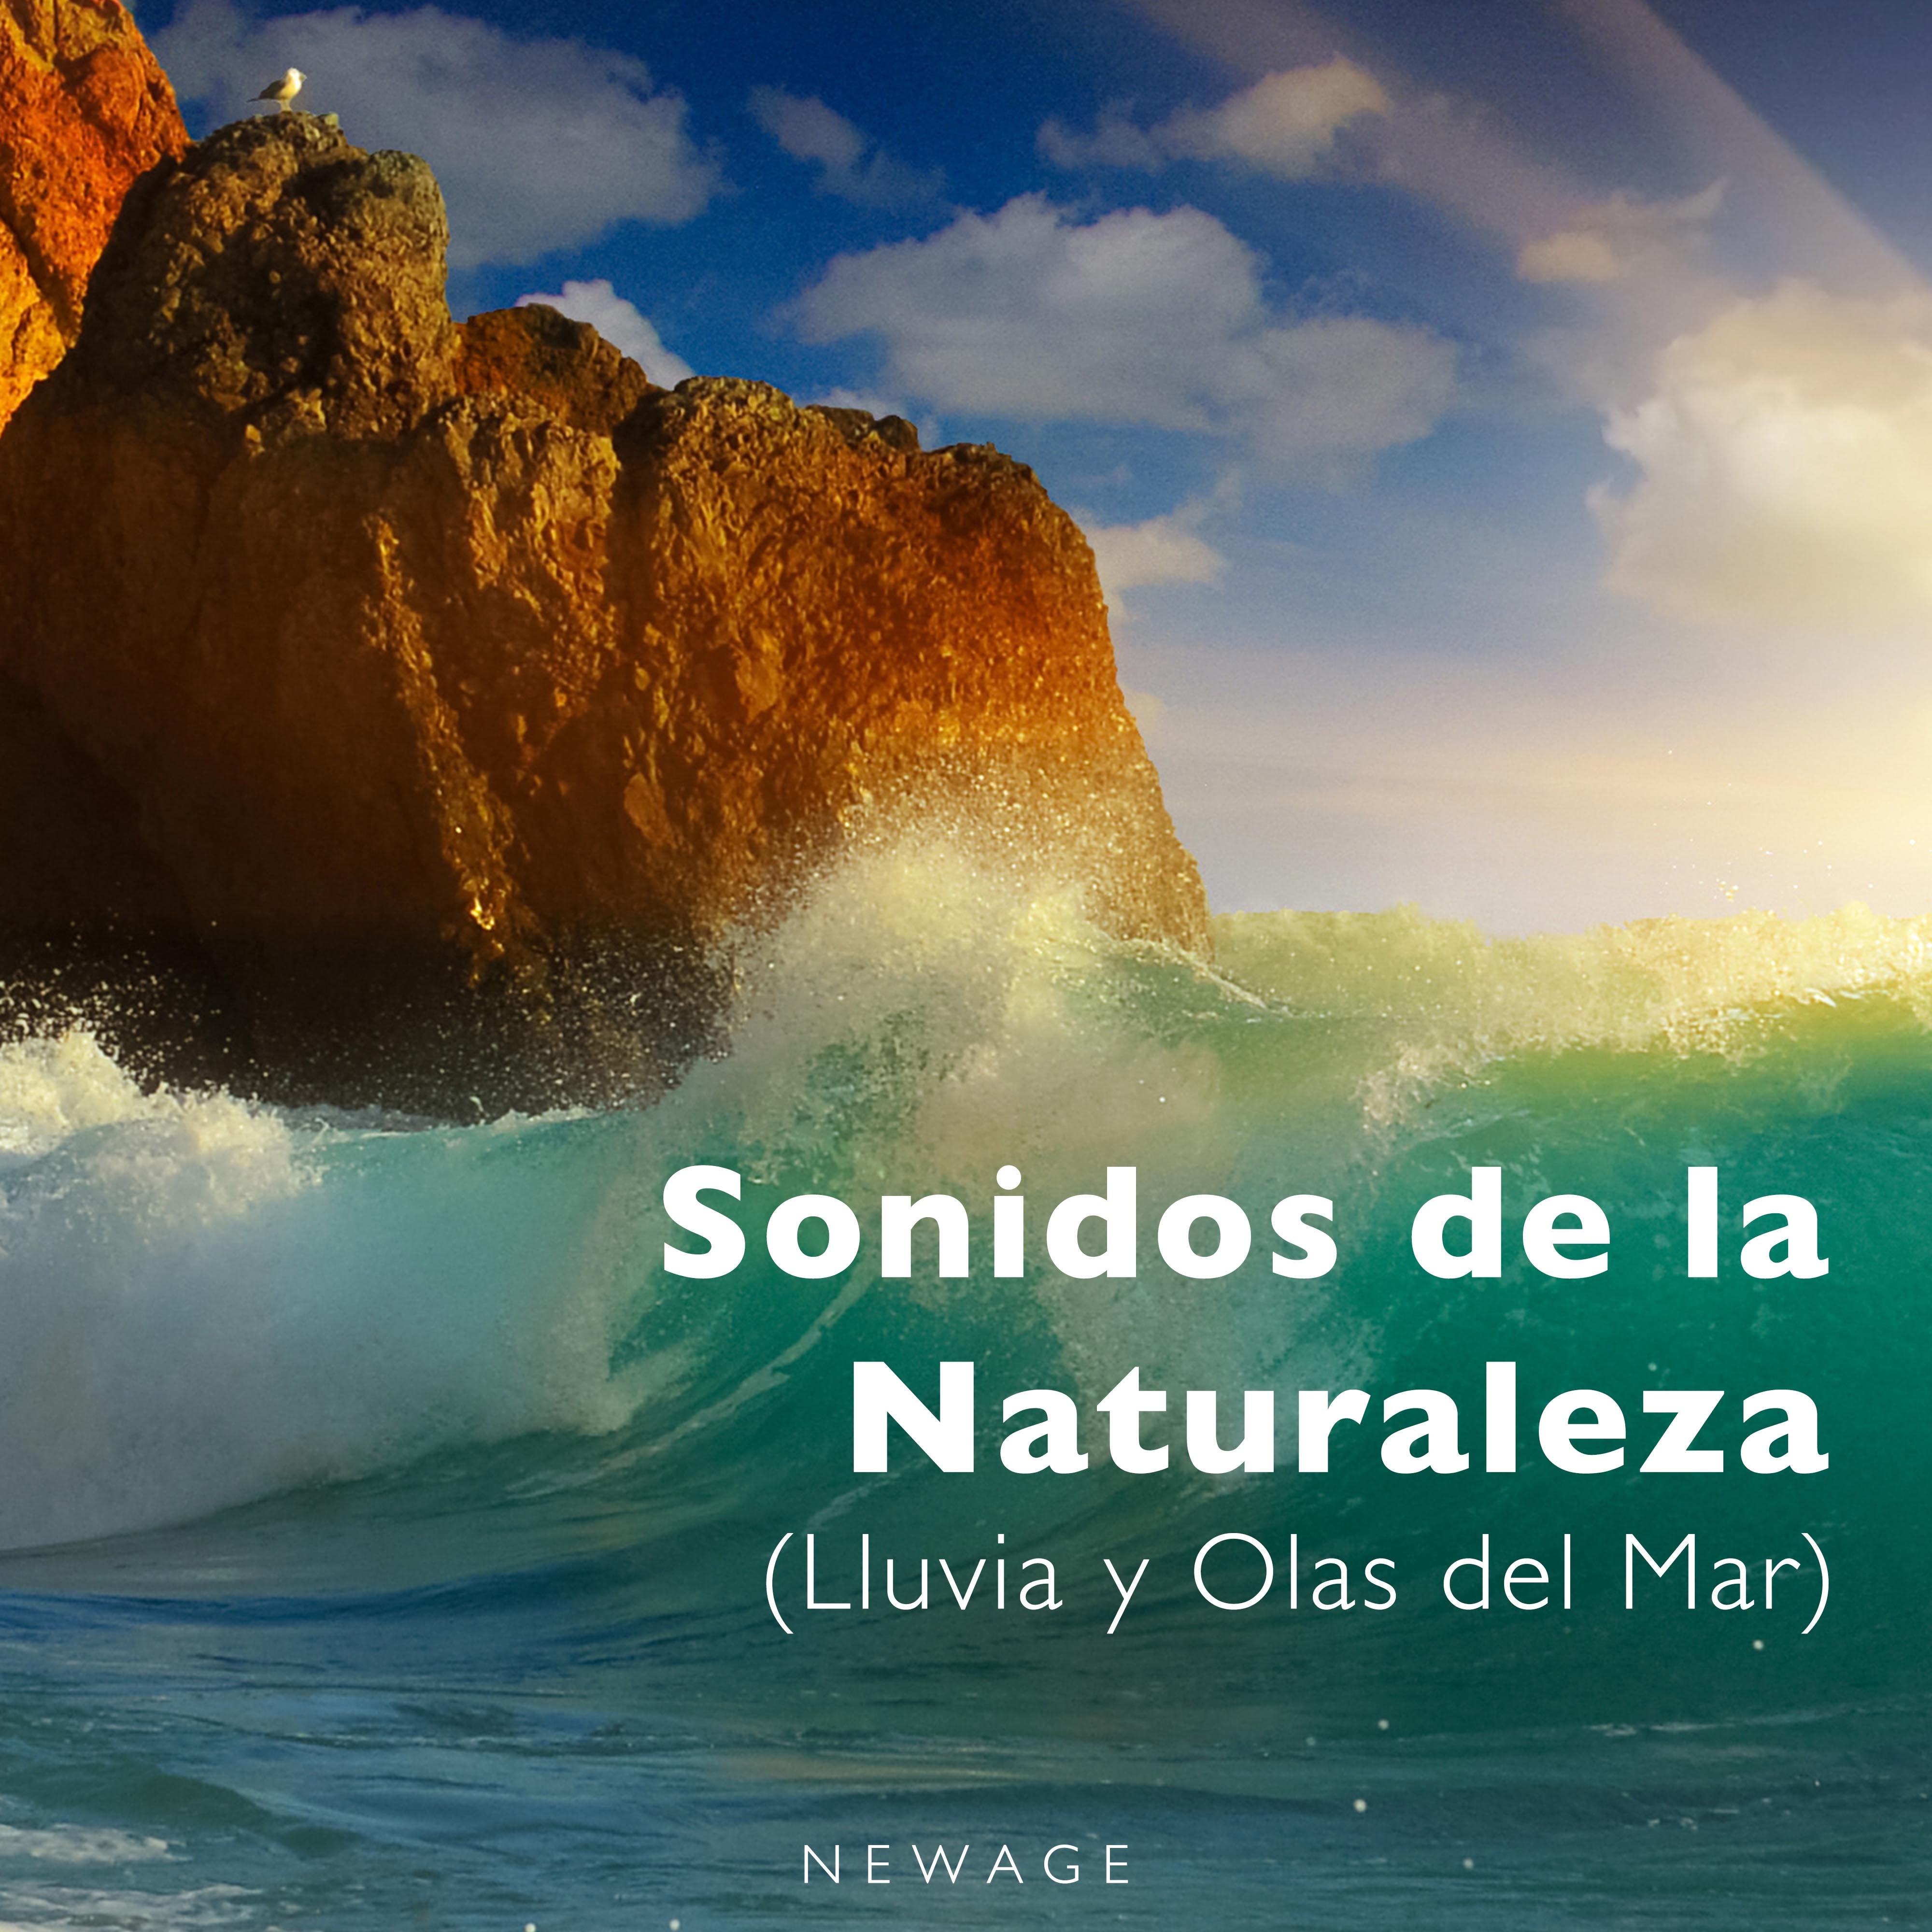 Sonidos de la Naturaleza (Lluvia y Olas del Mar)